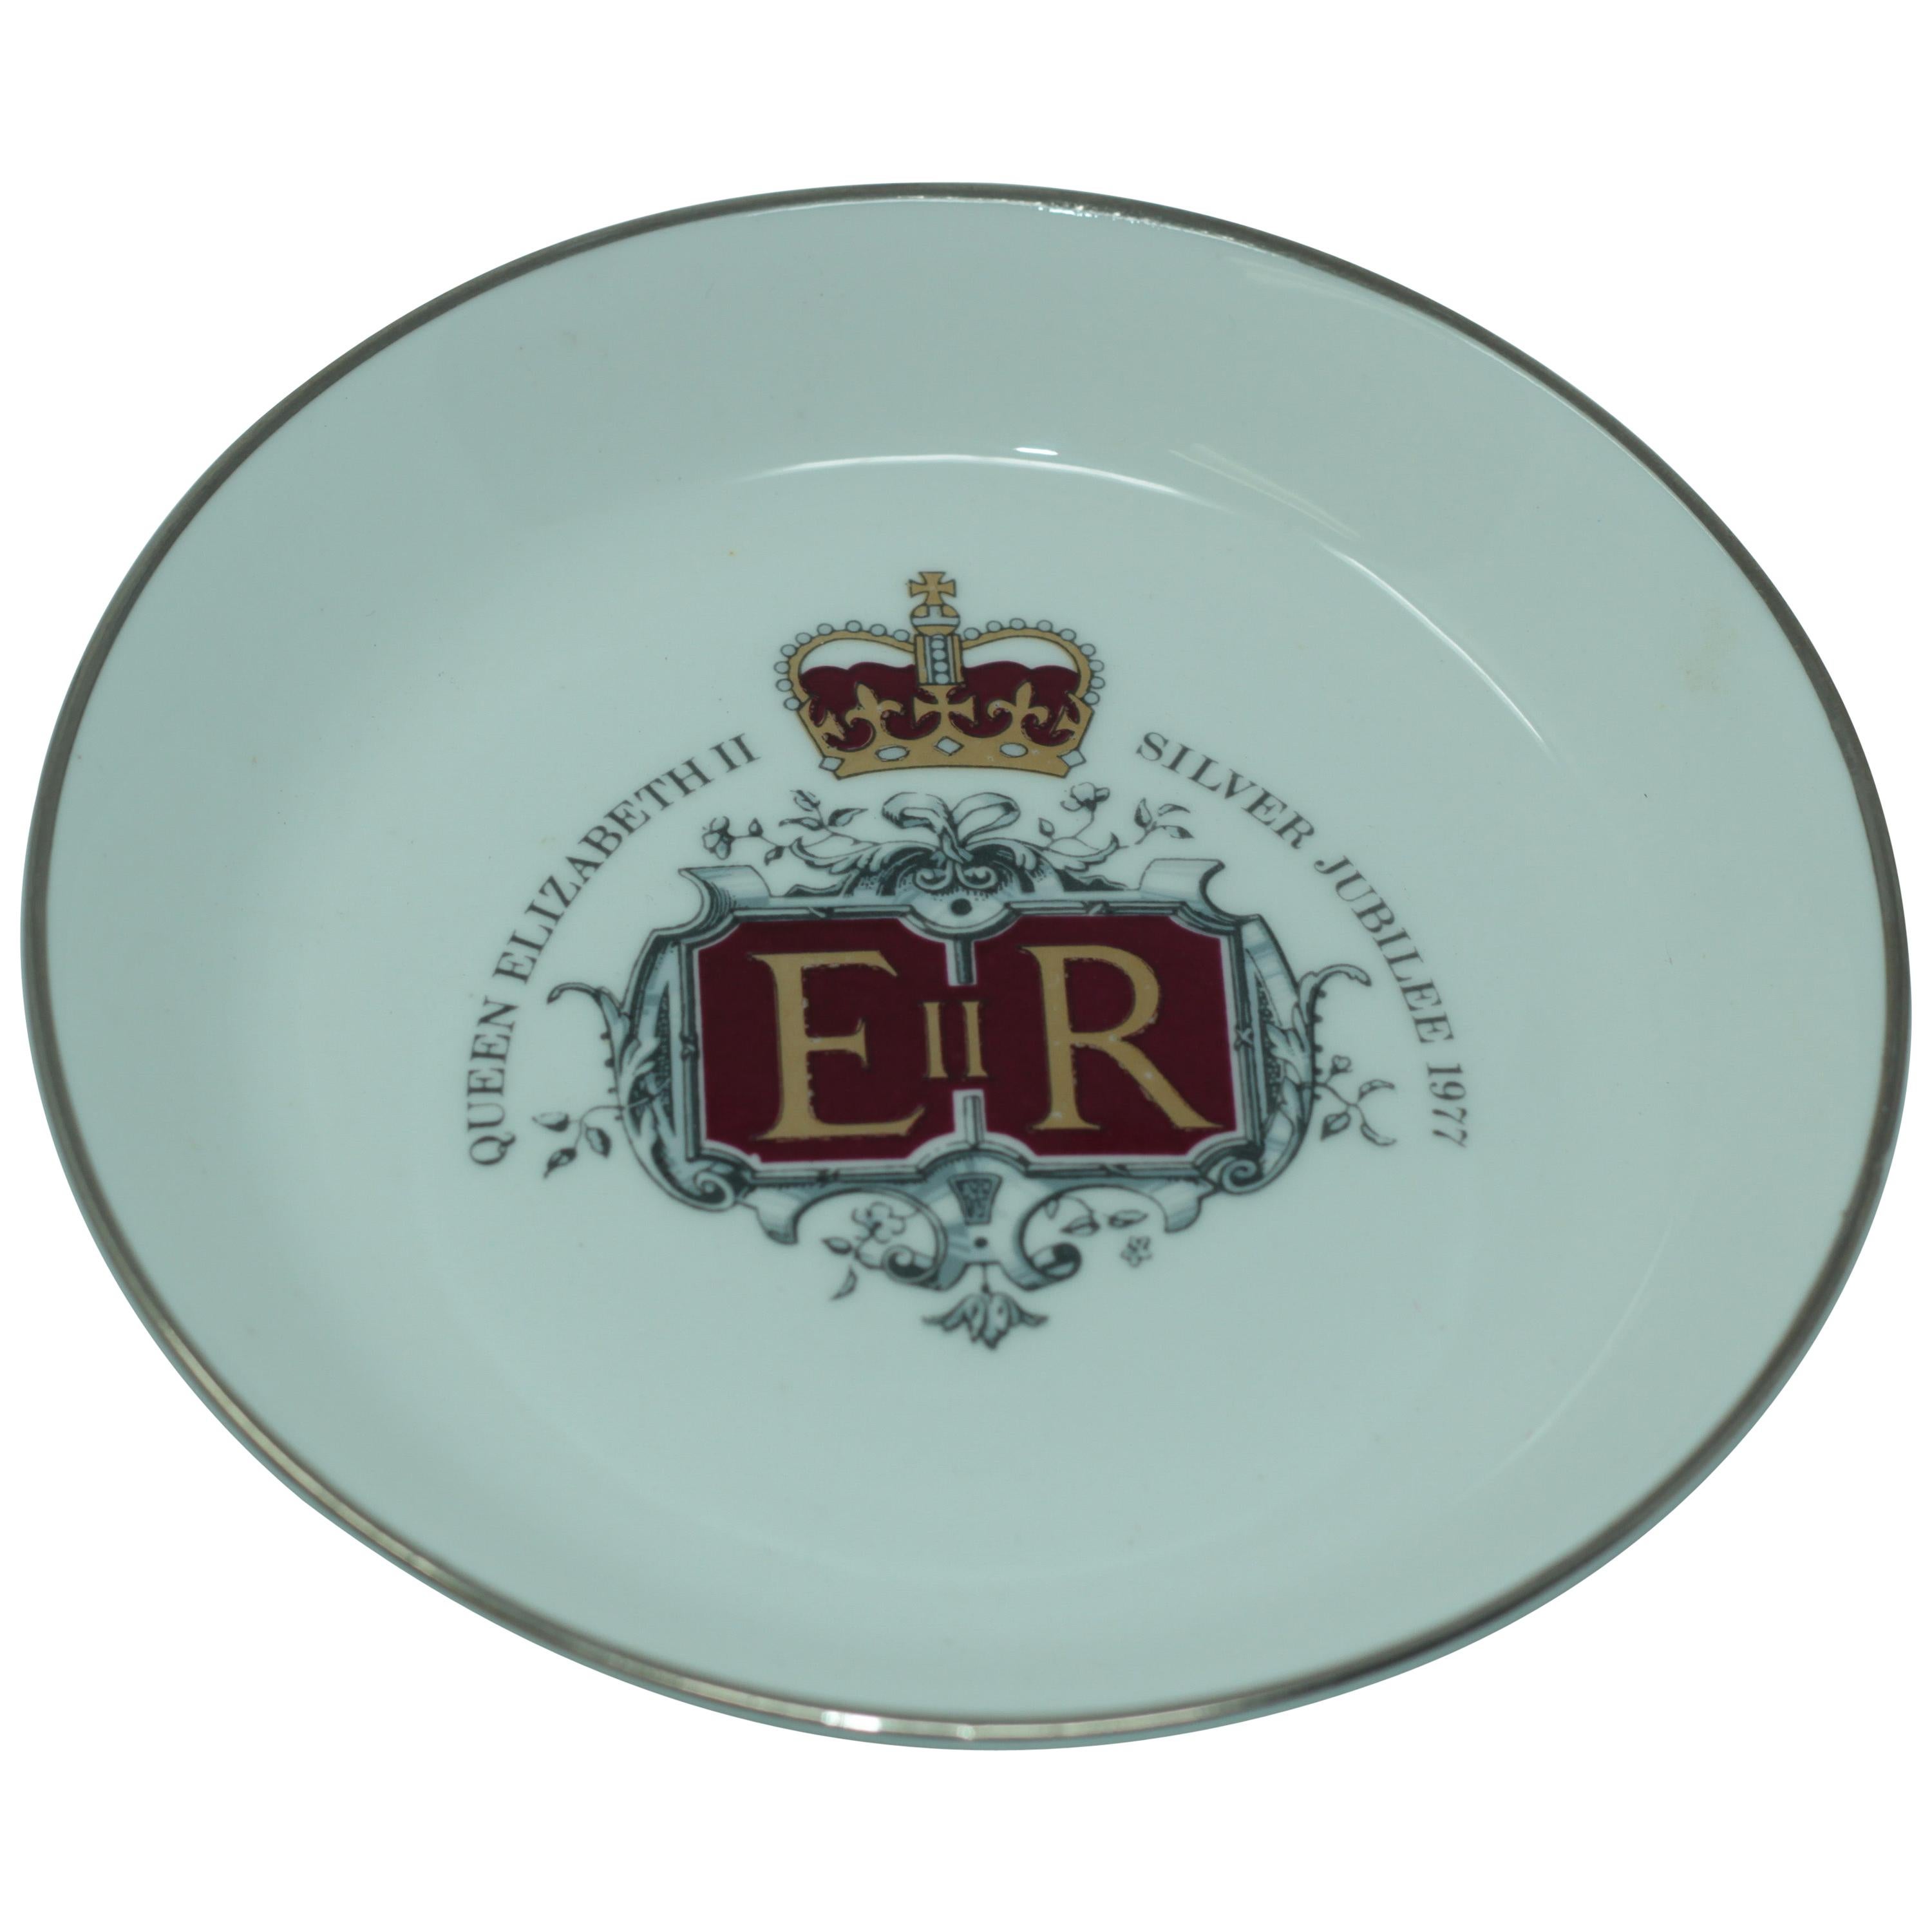 Vintage Queen Elizabeth II Silver Jubilee Porcelain Plate, 1977